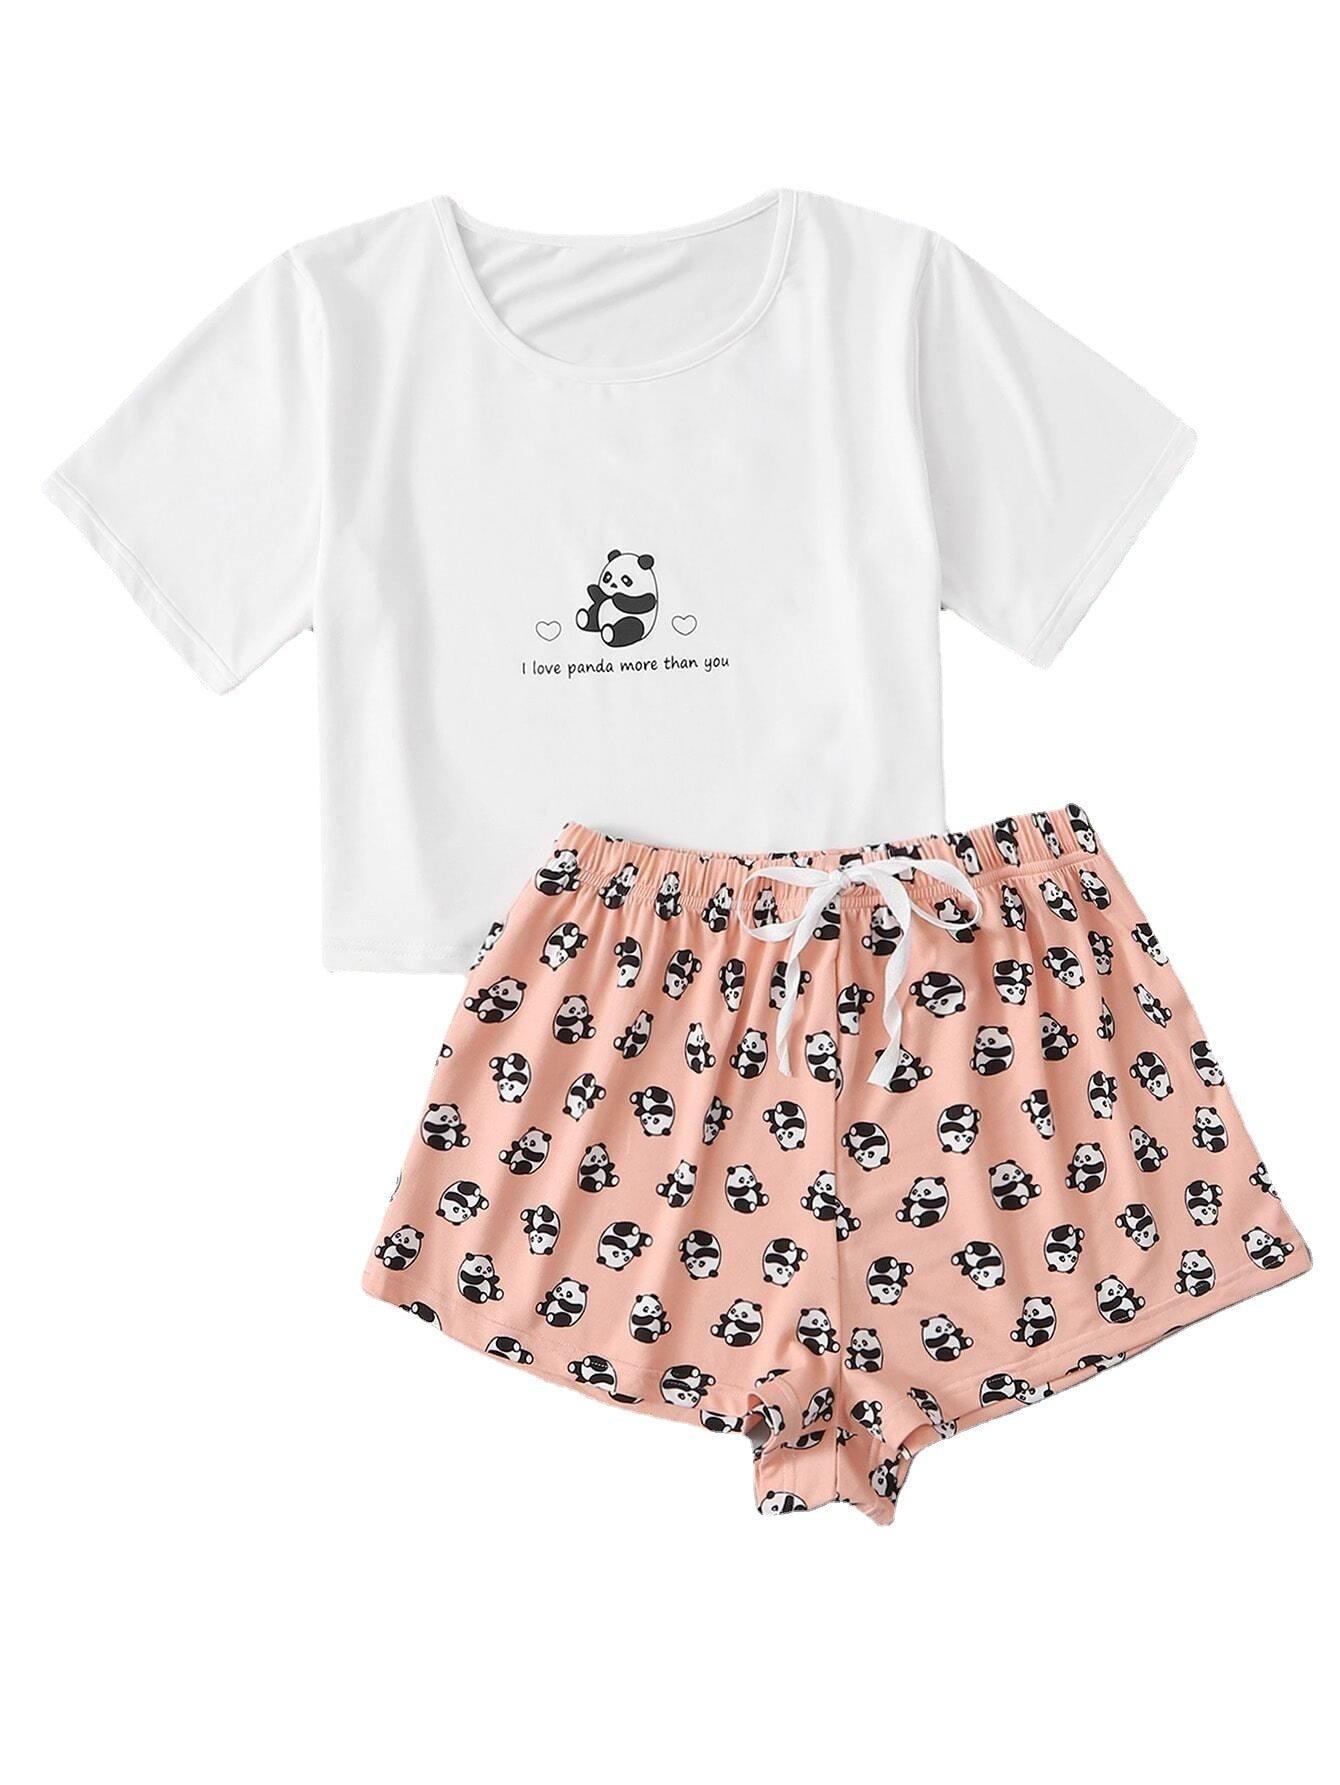 Home Wear Printing Midriff-Baring Pyjamas Set - ForVanity sleepwear, Sweet Dreams, women's lingerie Pajamas